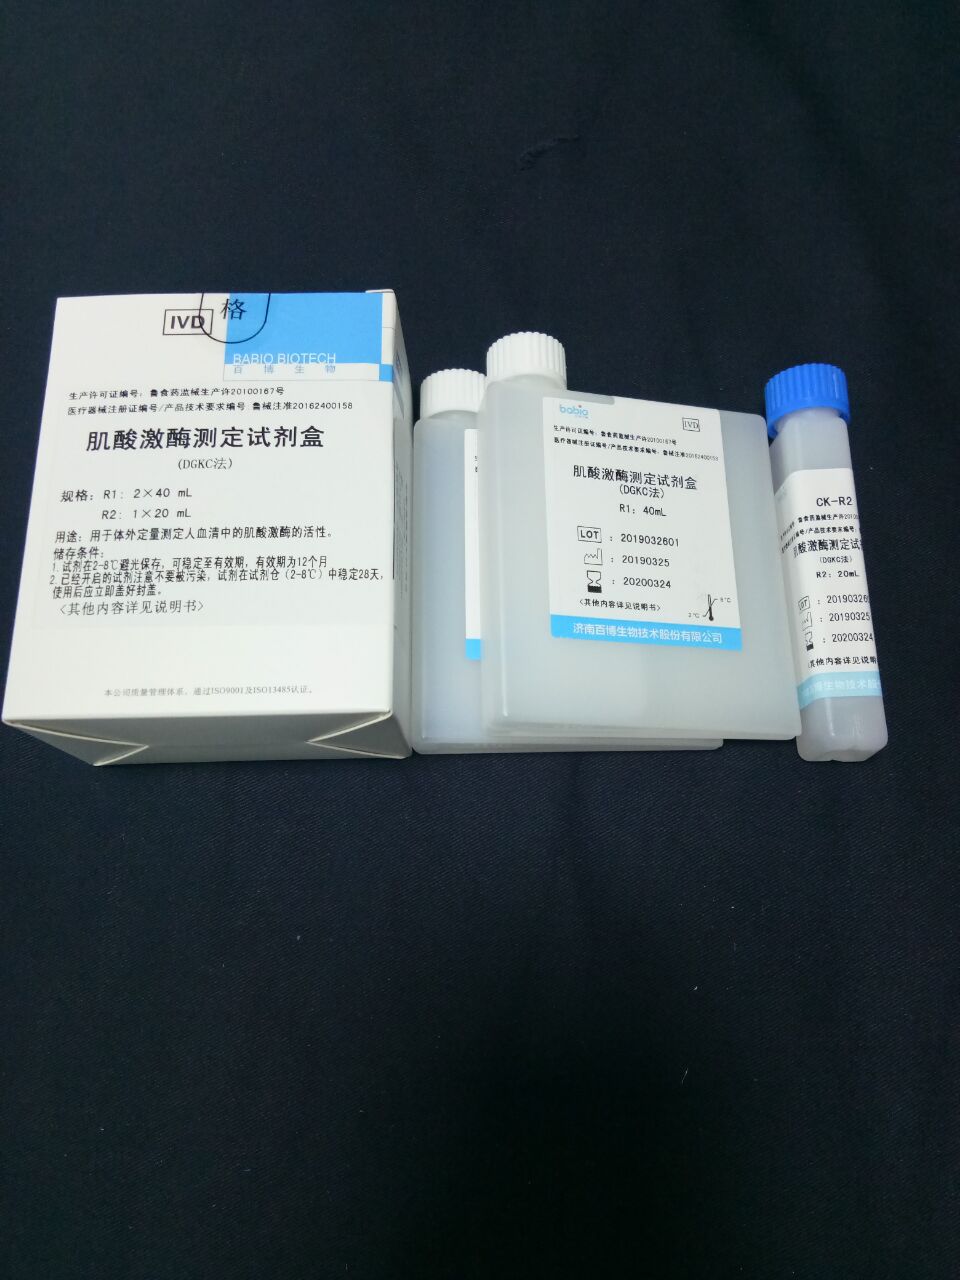 【百博】肌酸激酶测定试剂盒(DGKC法)